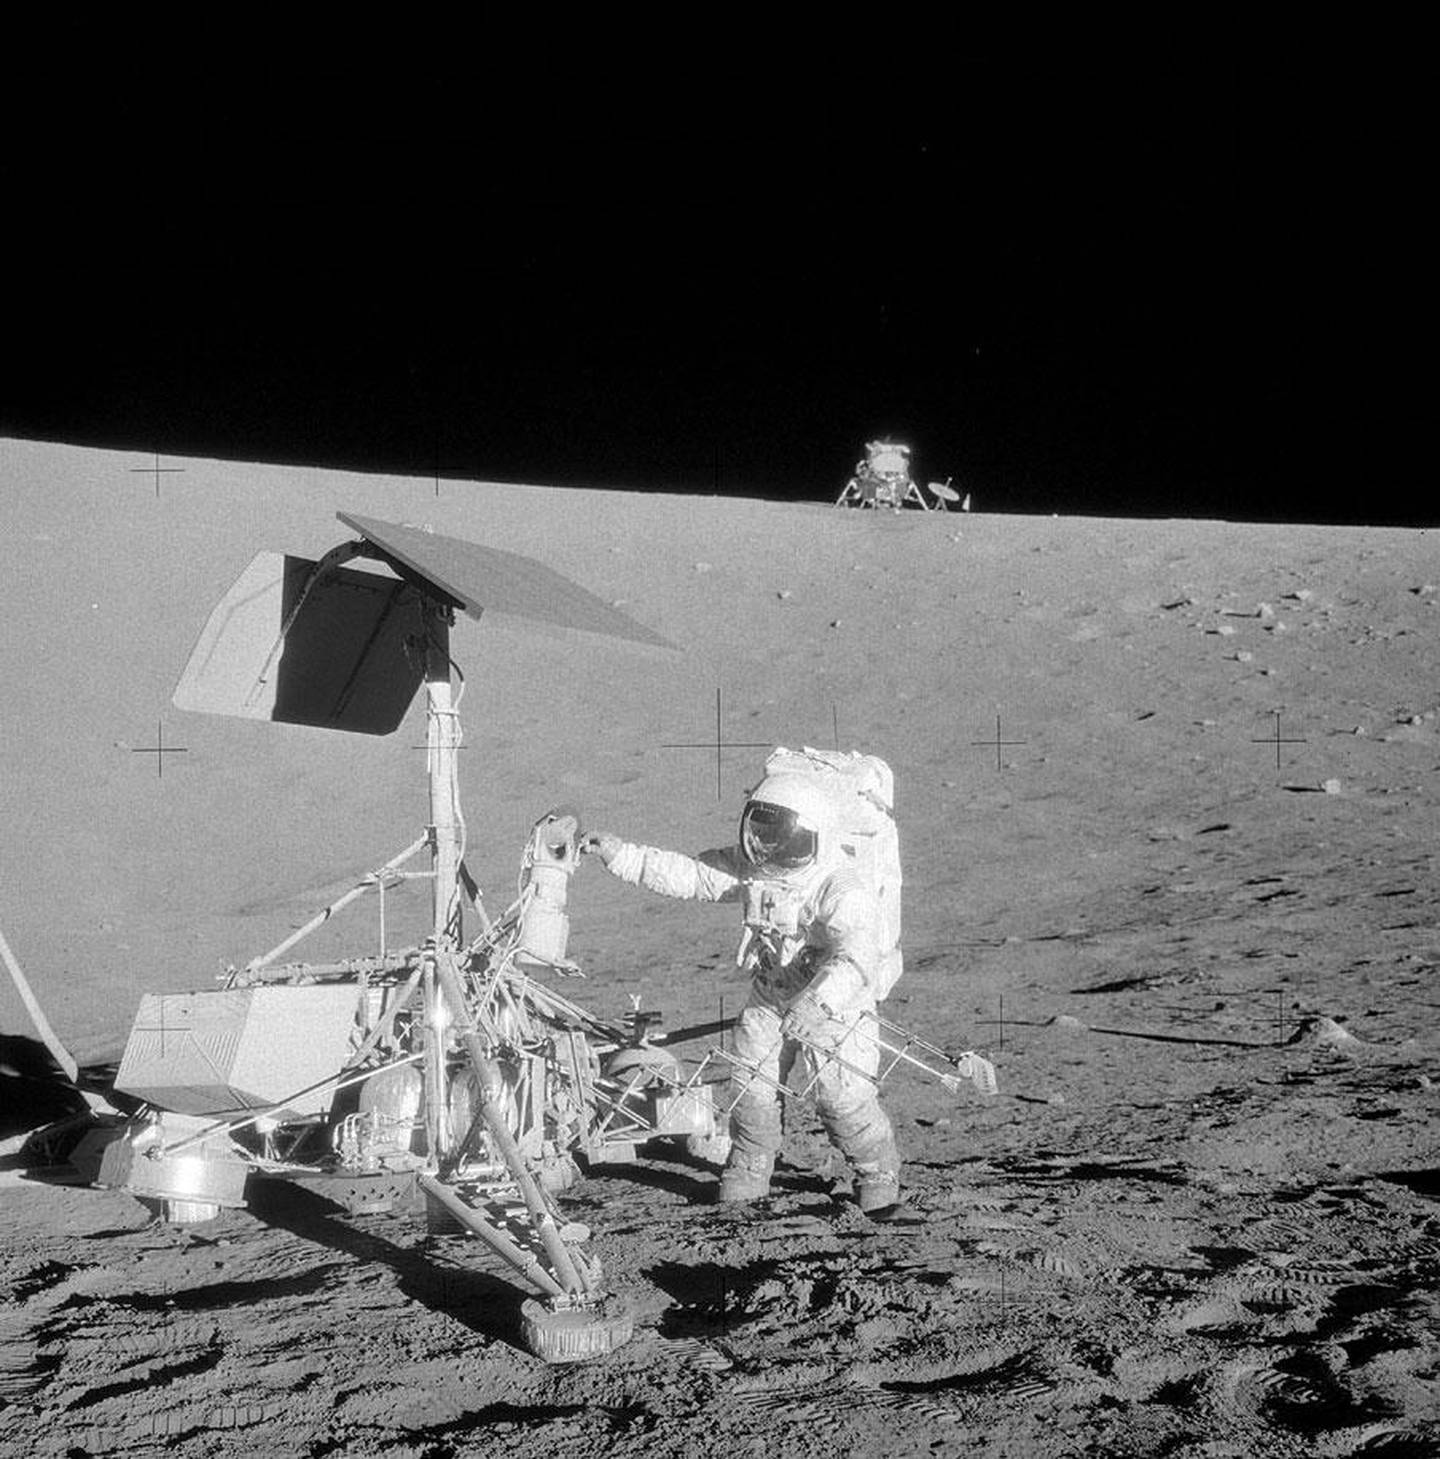 Oslo  20090913.
Pete Conrad fotograferte i 1969 Alan Bean som inspiserte den ubemannede månesonden Surveyor 3. Den hadde landet på månen to år tidligere, før noe menneske hadde vært på månen.
Foto: NASA / Scanpix